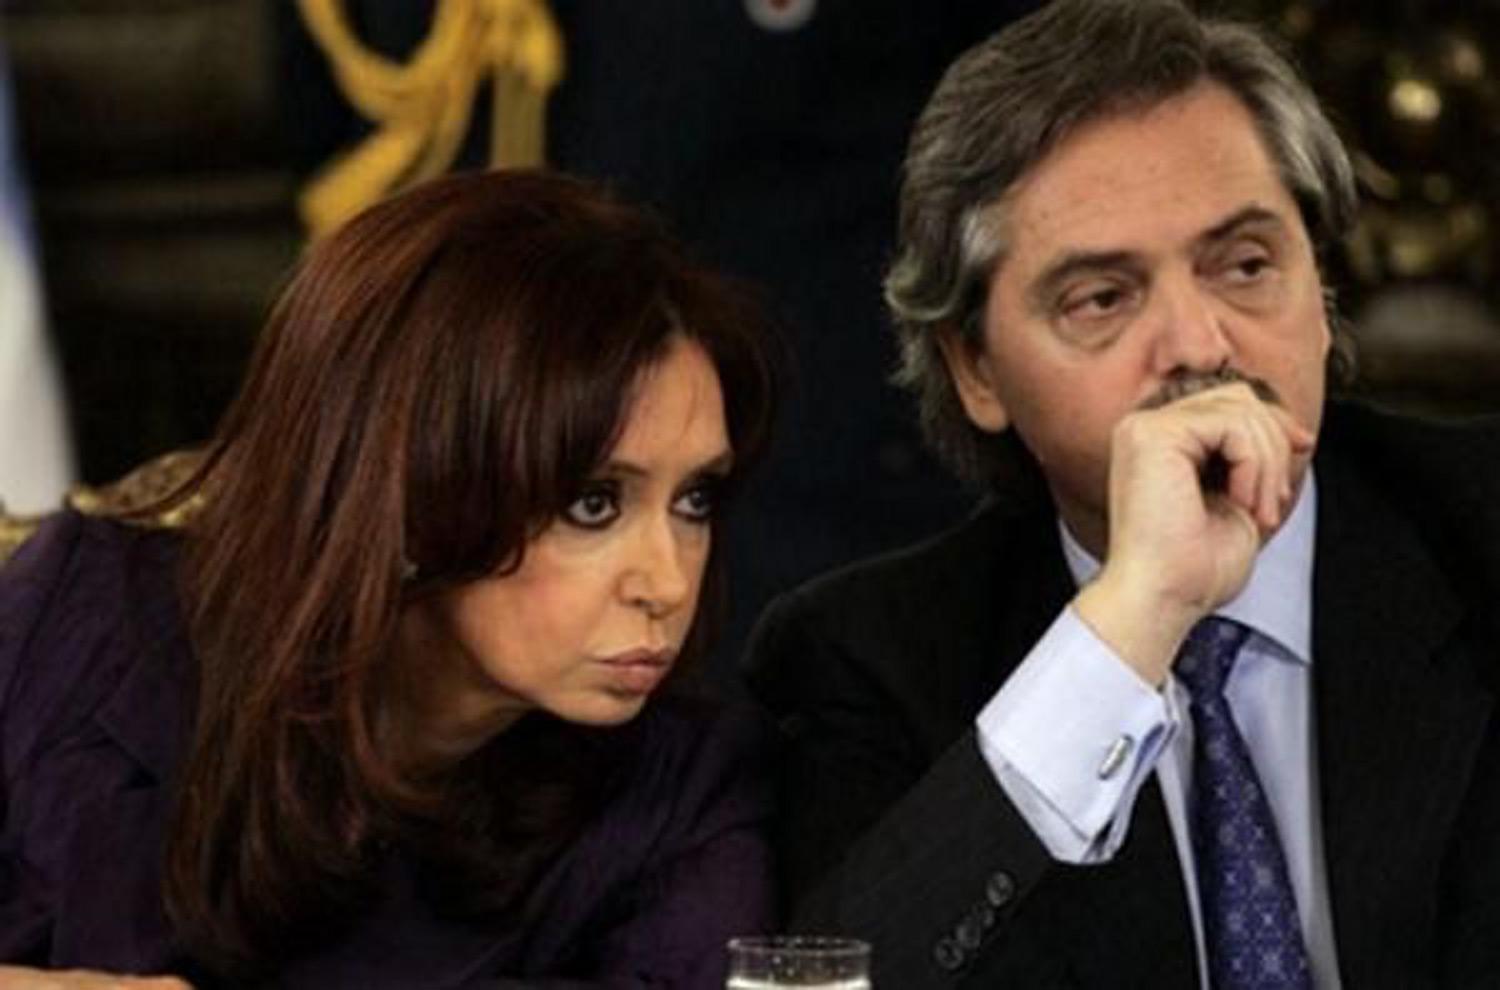 Financial Times: “el fantasma del peronismo está volviendo a Argentina”